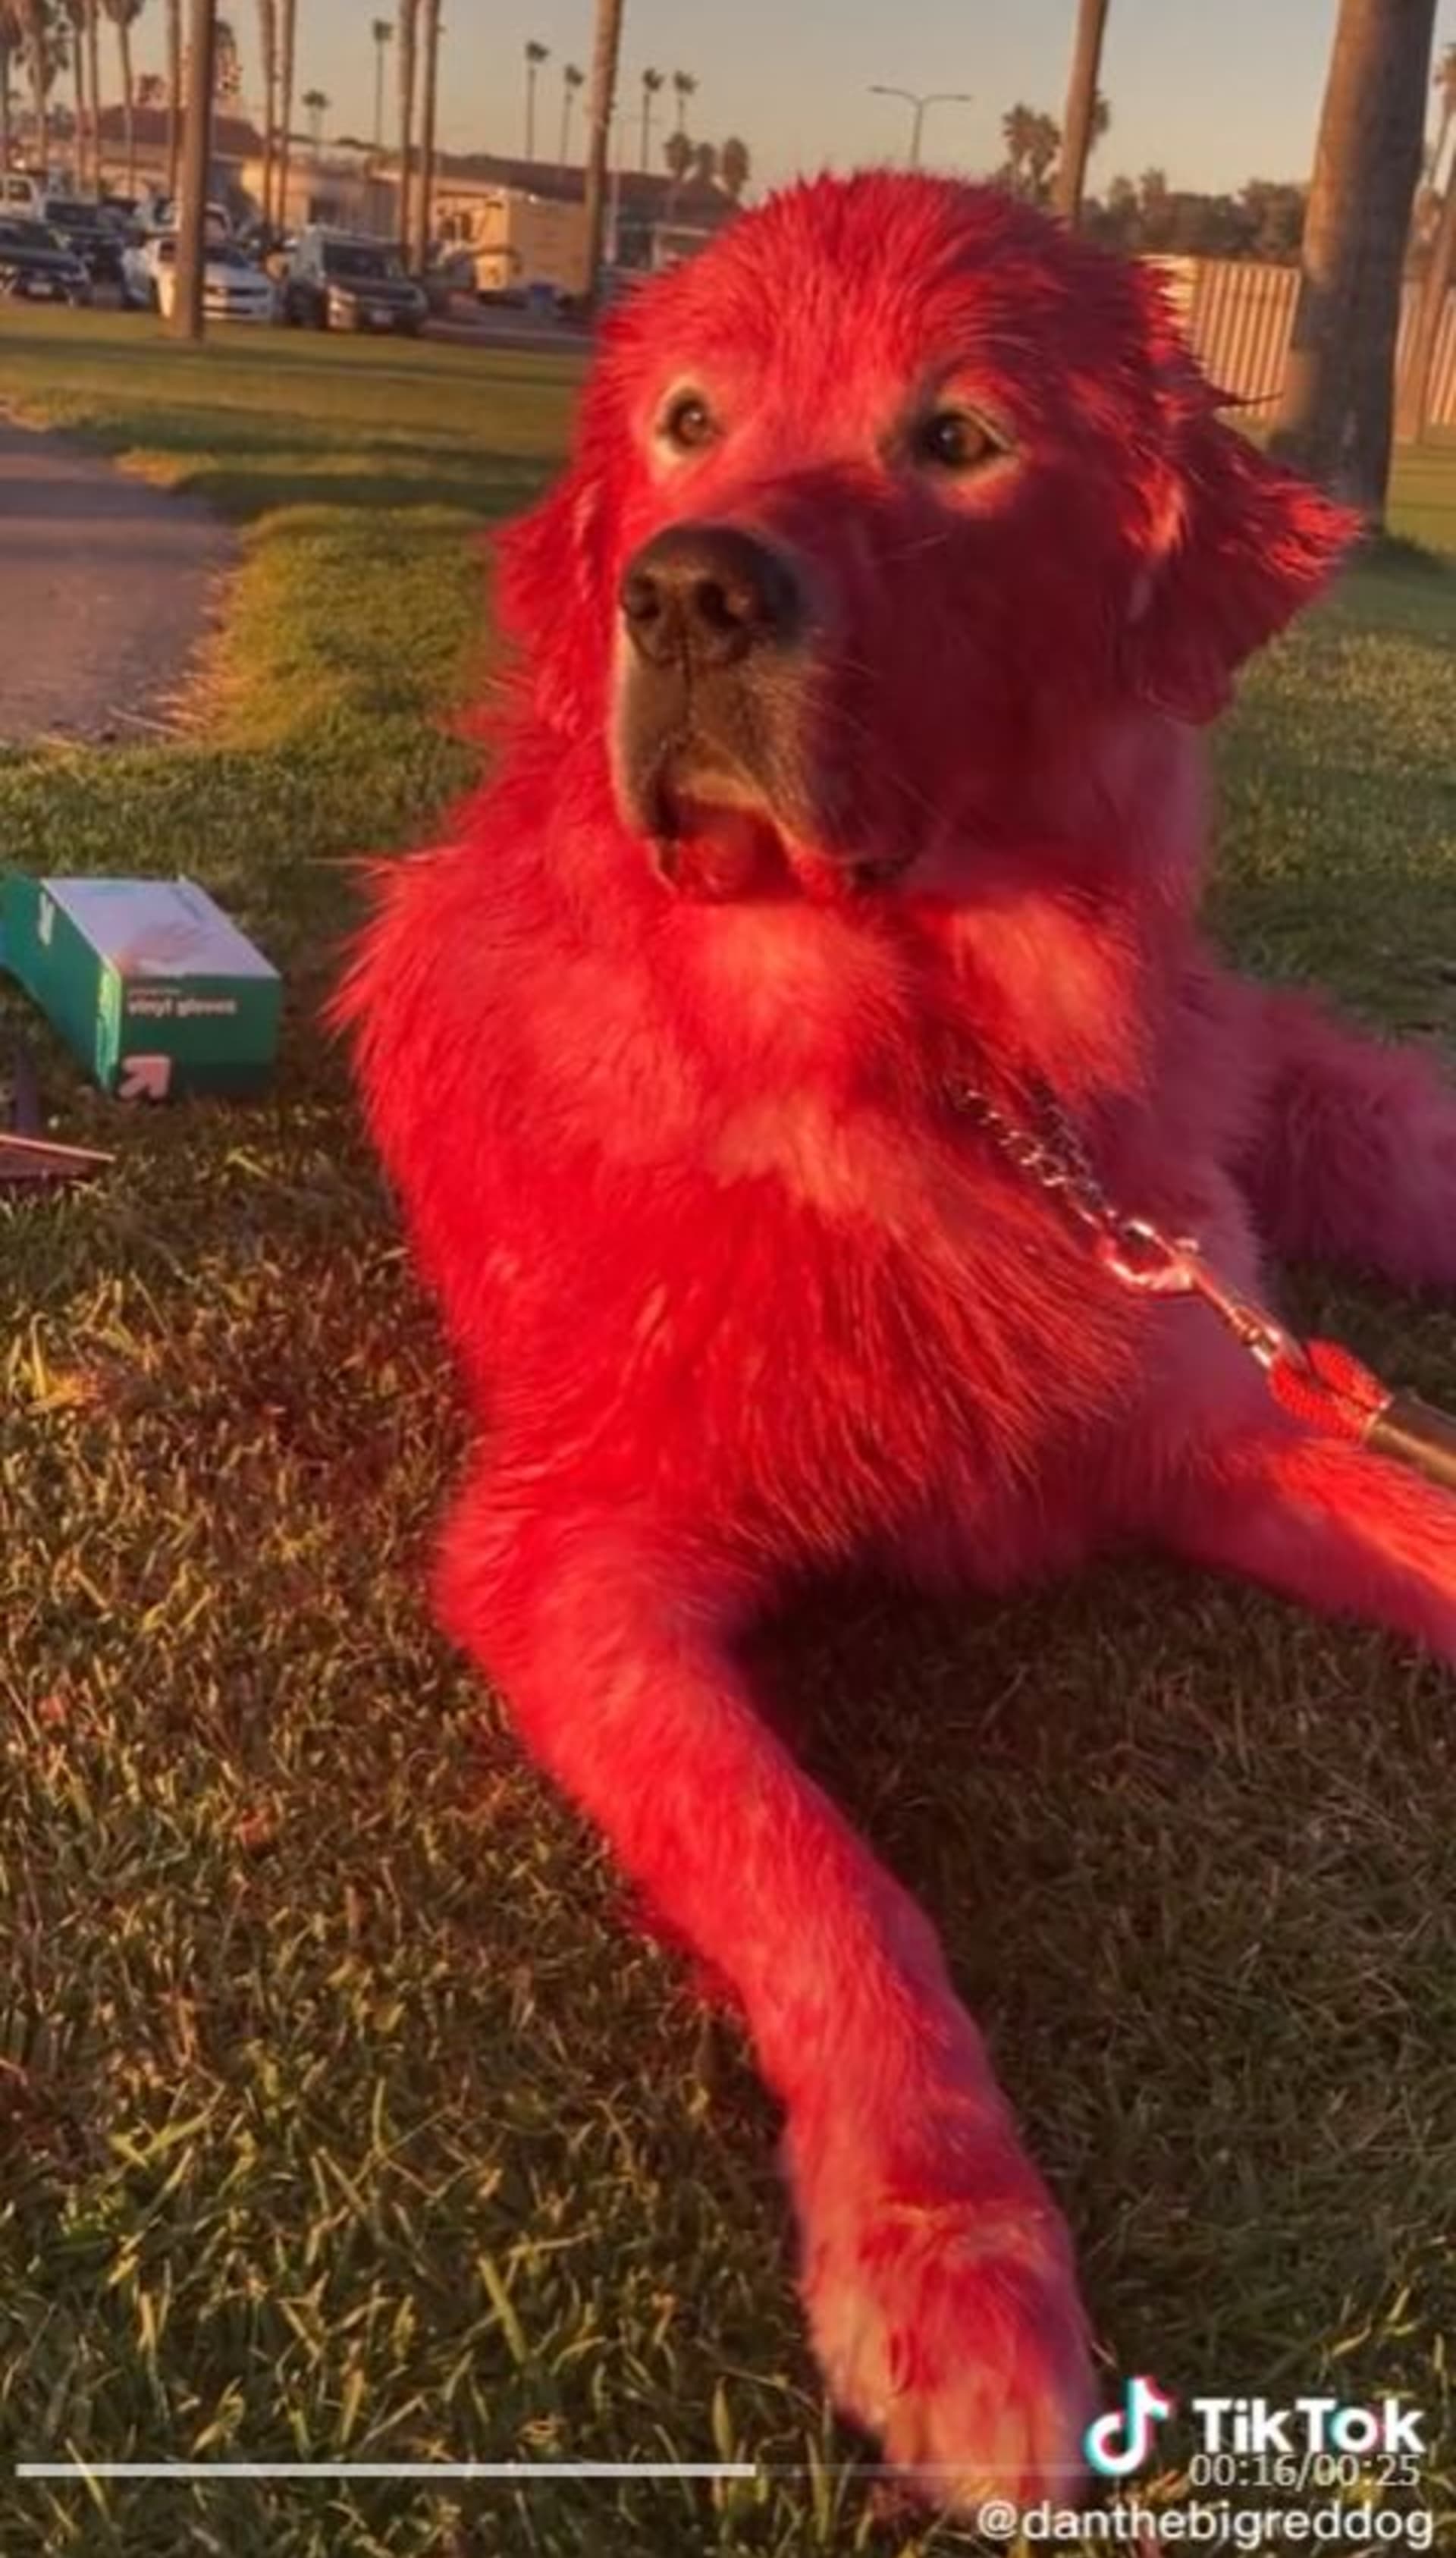 Tiktokerka nabarvila psa na červeno 1